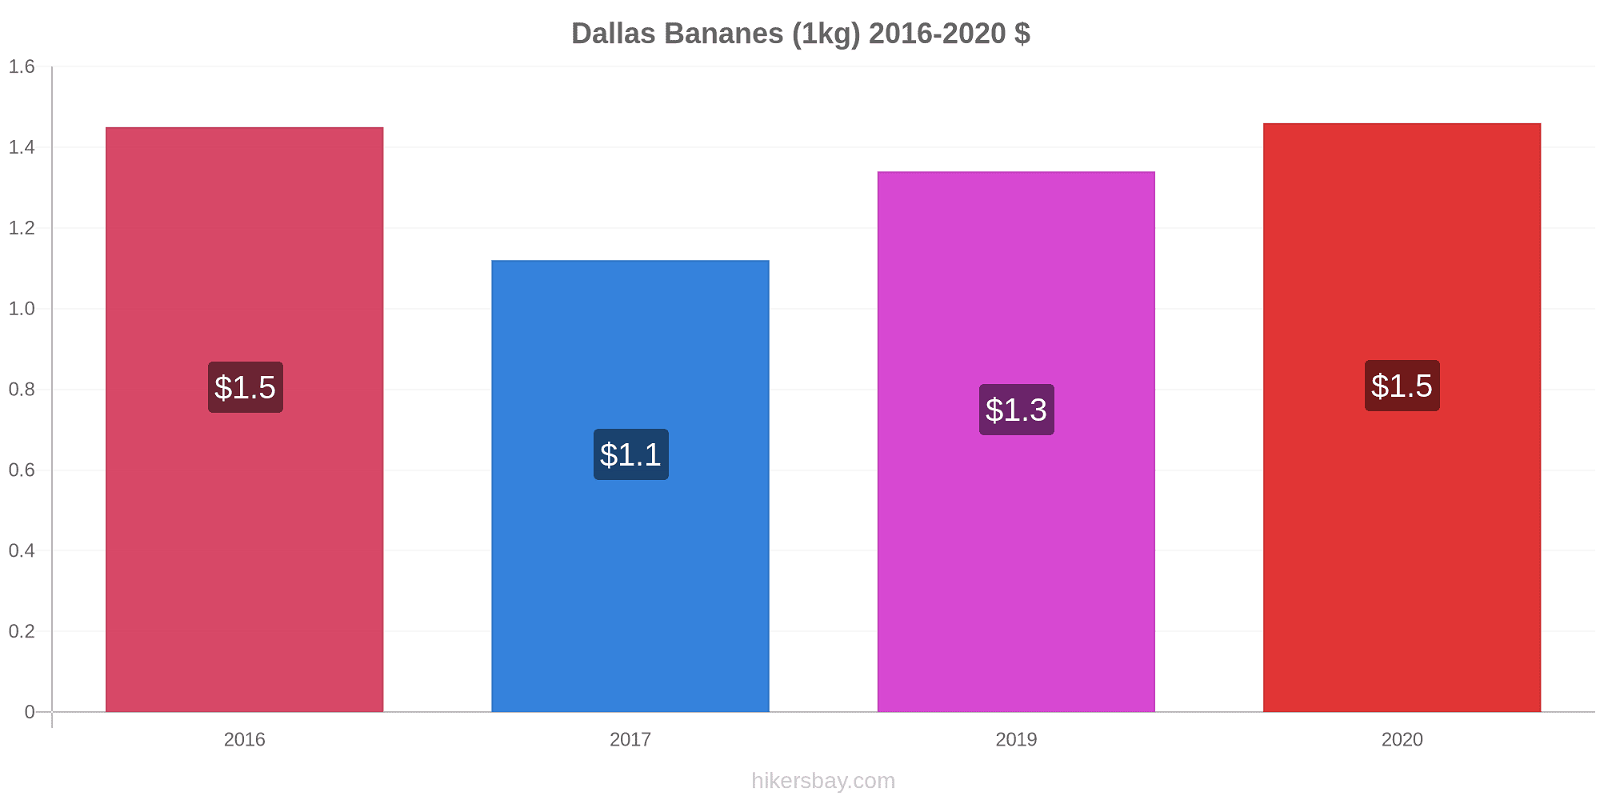 Dallas changements de prix Bananes (1kg) hikersbay.com